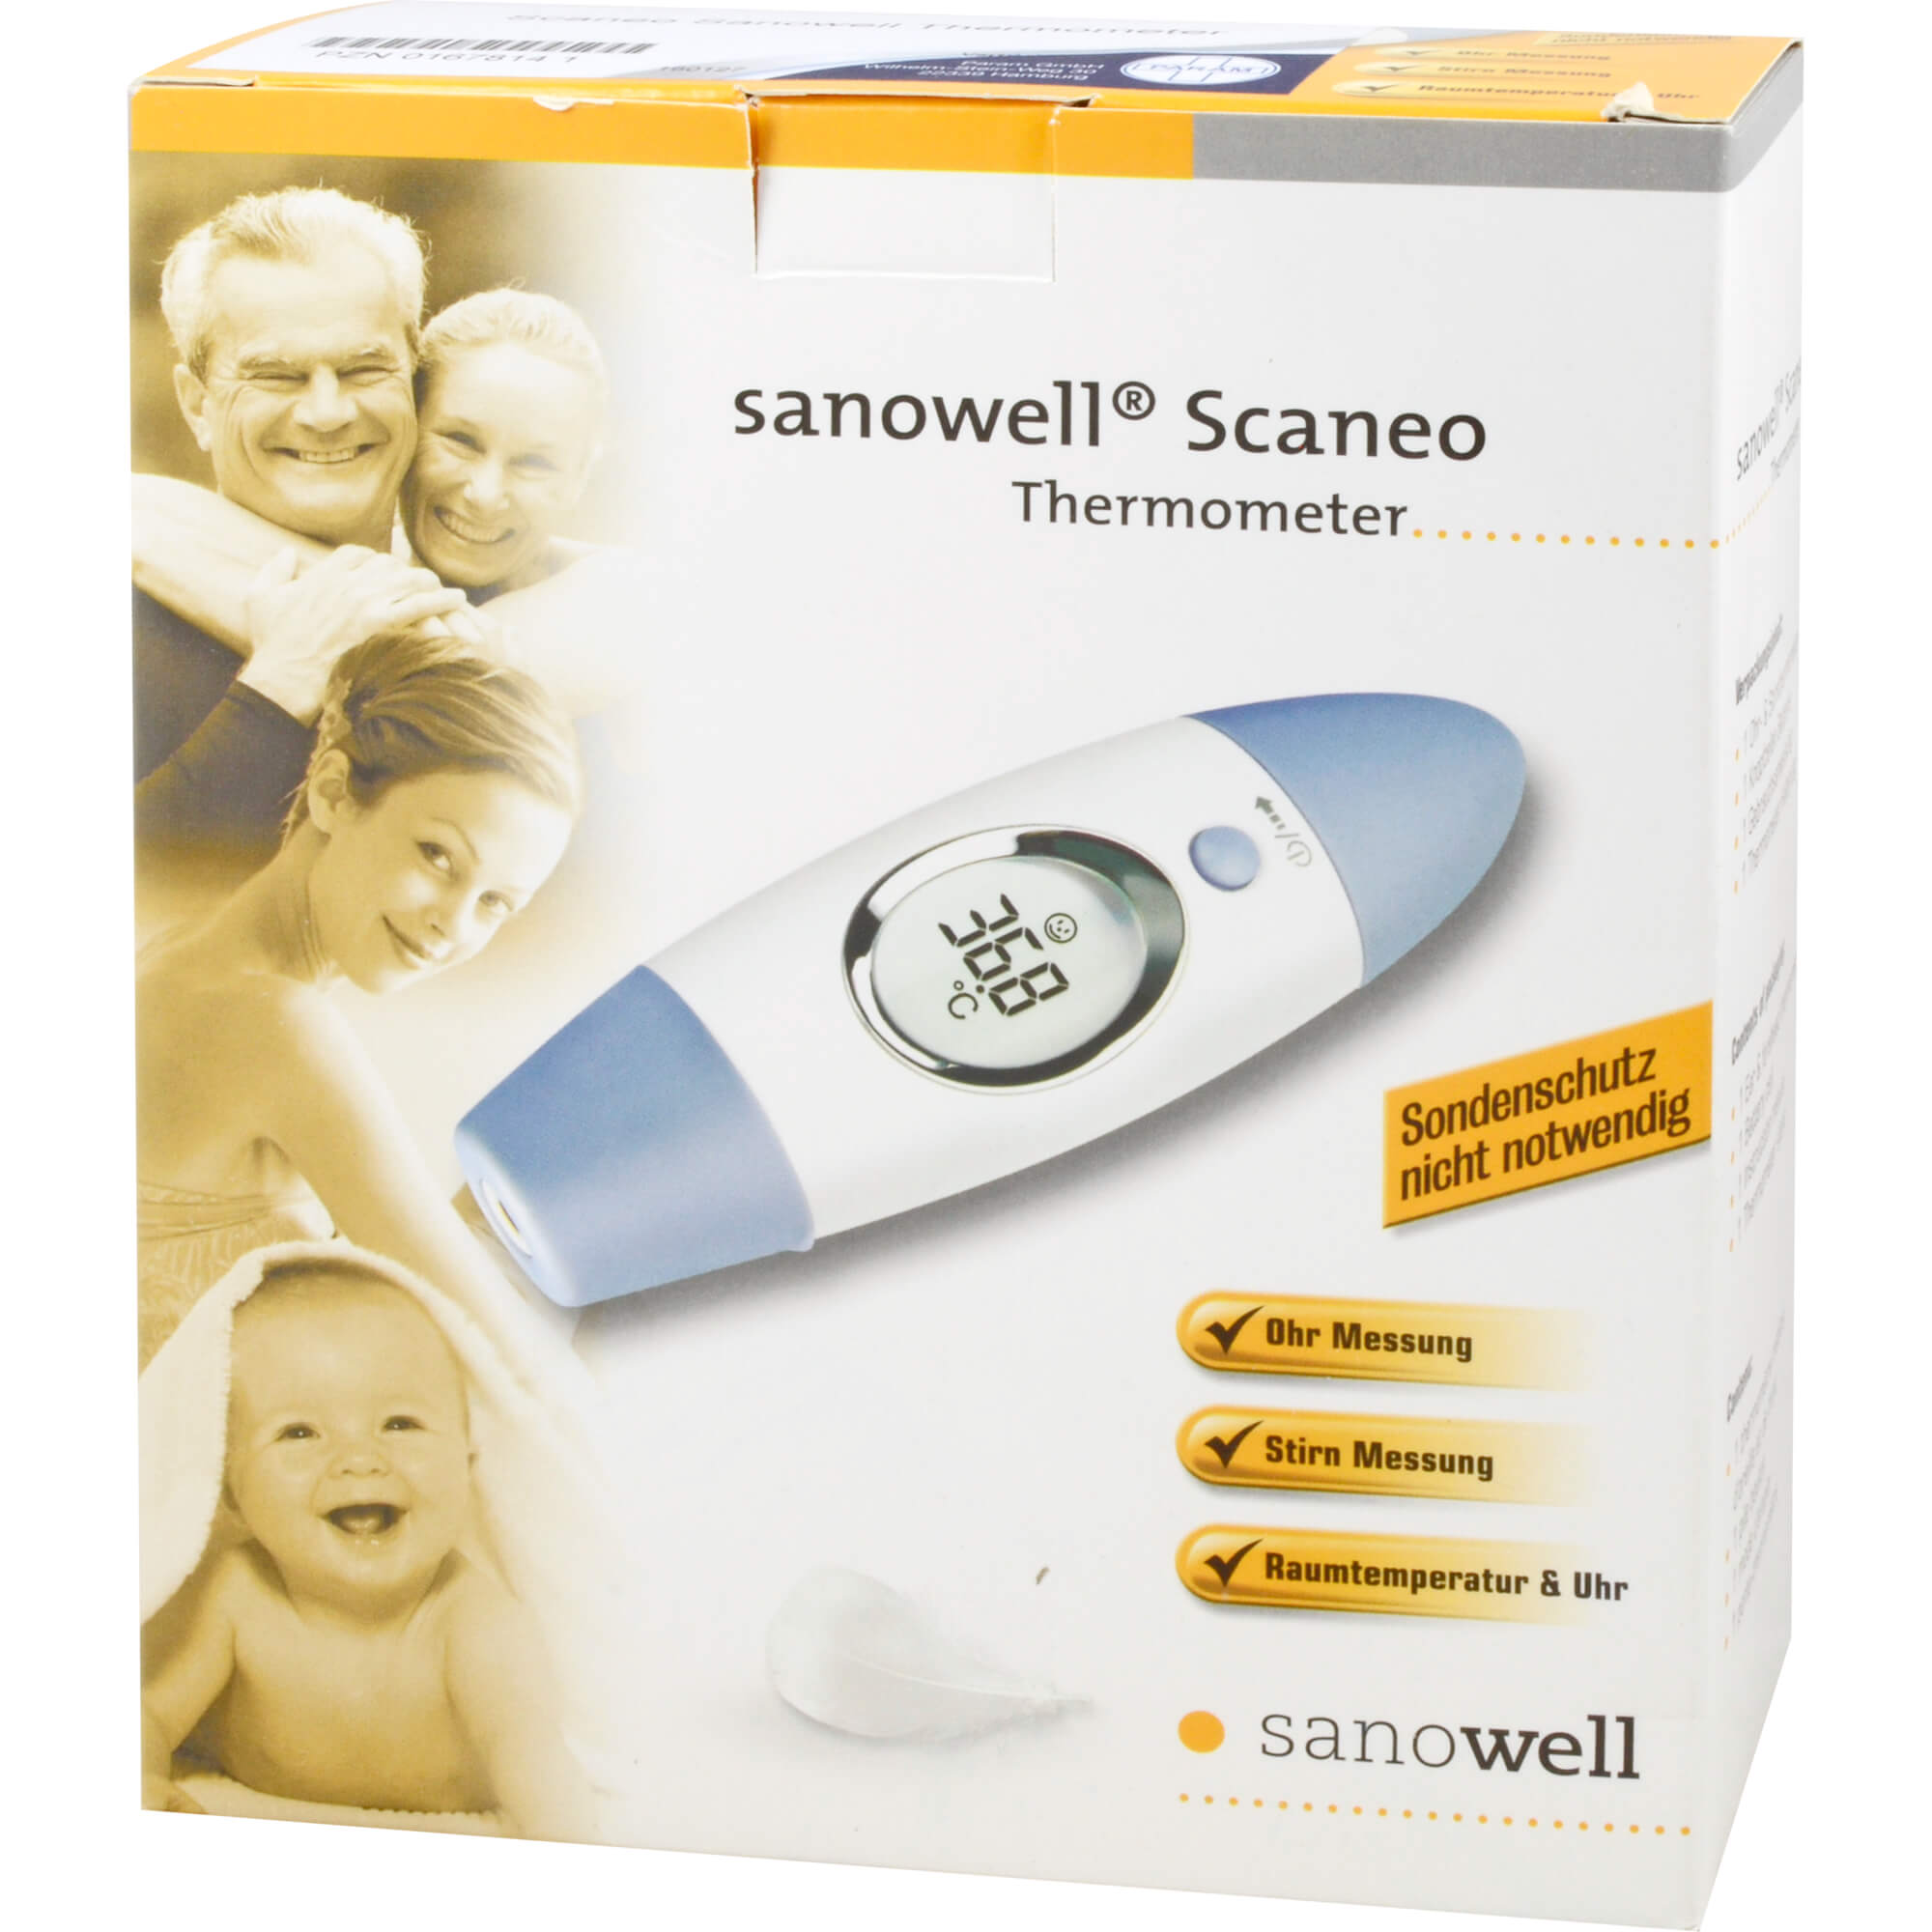 Sanowell Scaneo Ohr- und Stirnthermometer.